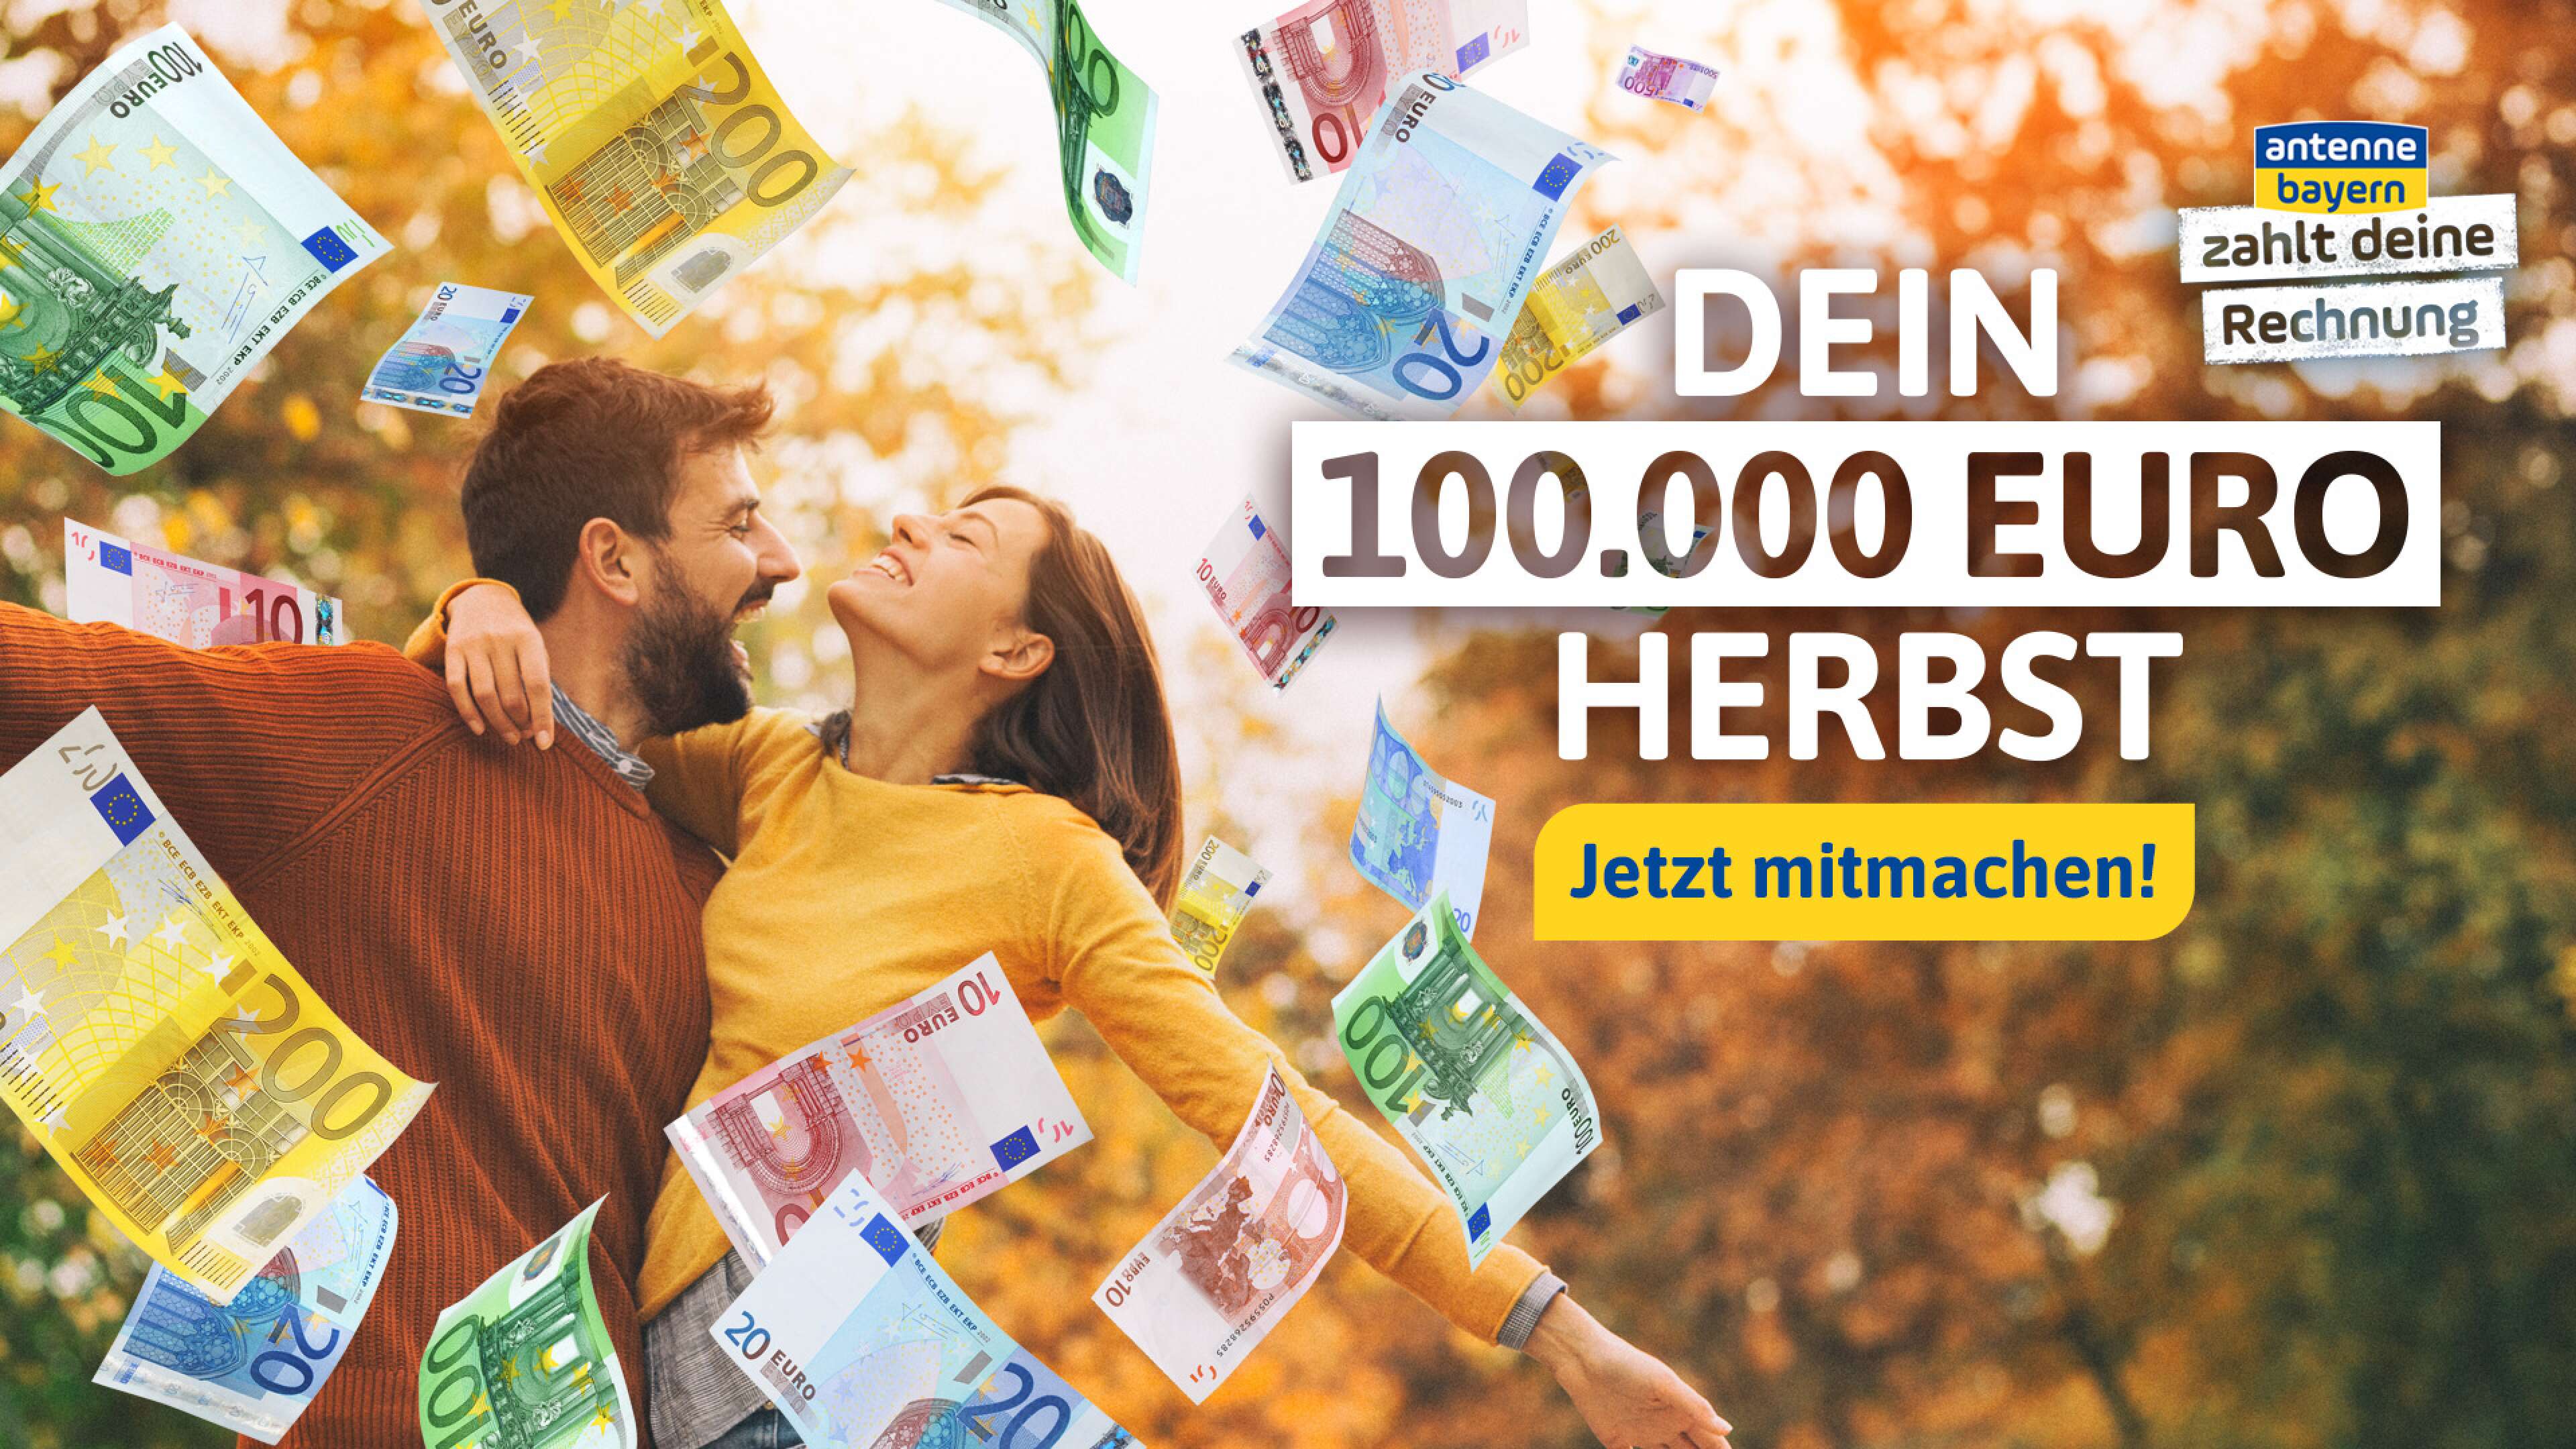 ANTENNE BAYERN zahlt deine Rechnung - 100.000 Euro Herbst